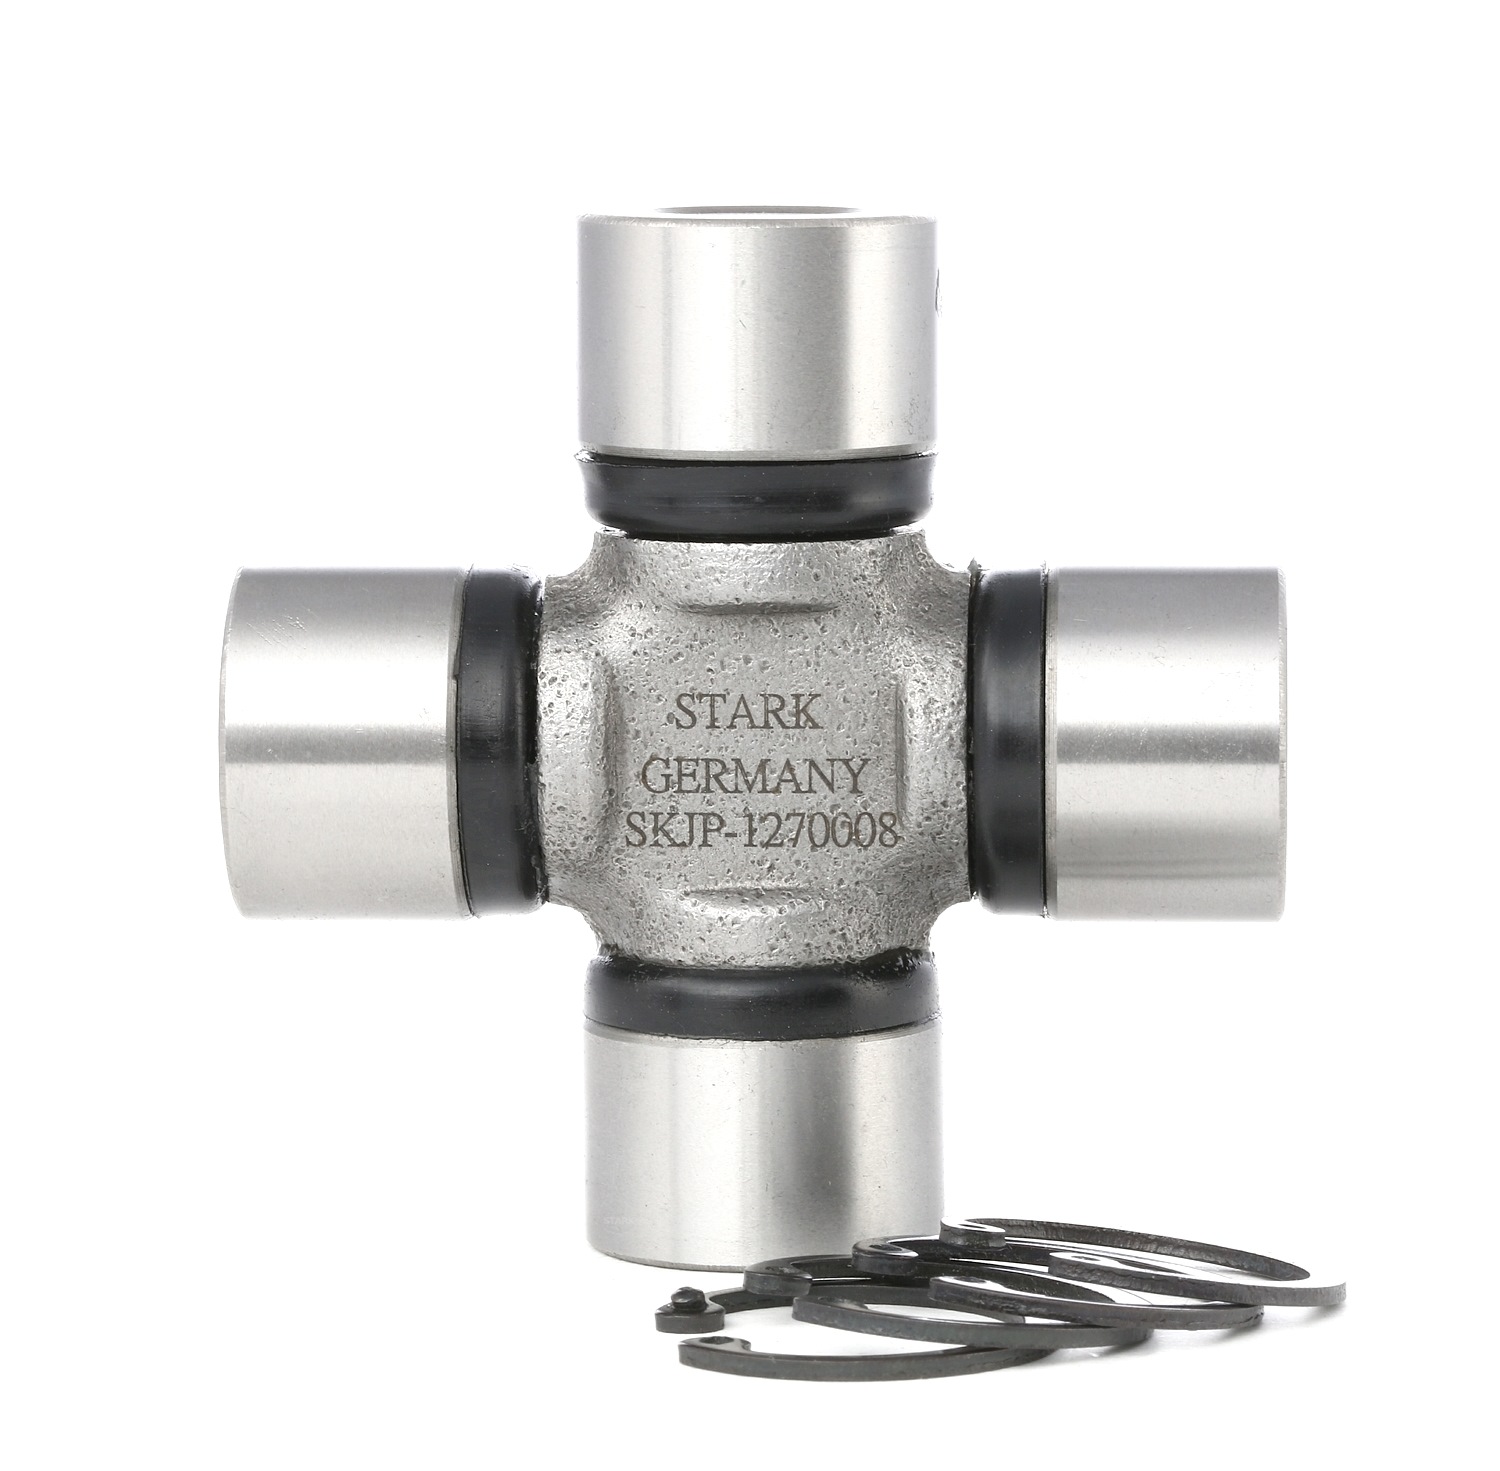 STARK SKJP-1270008 Drive shaft coupler